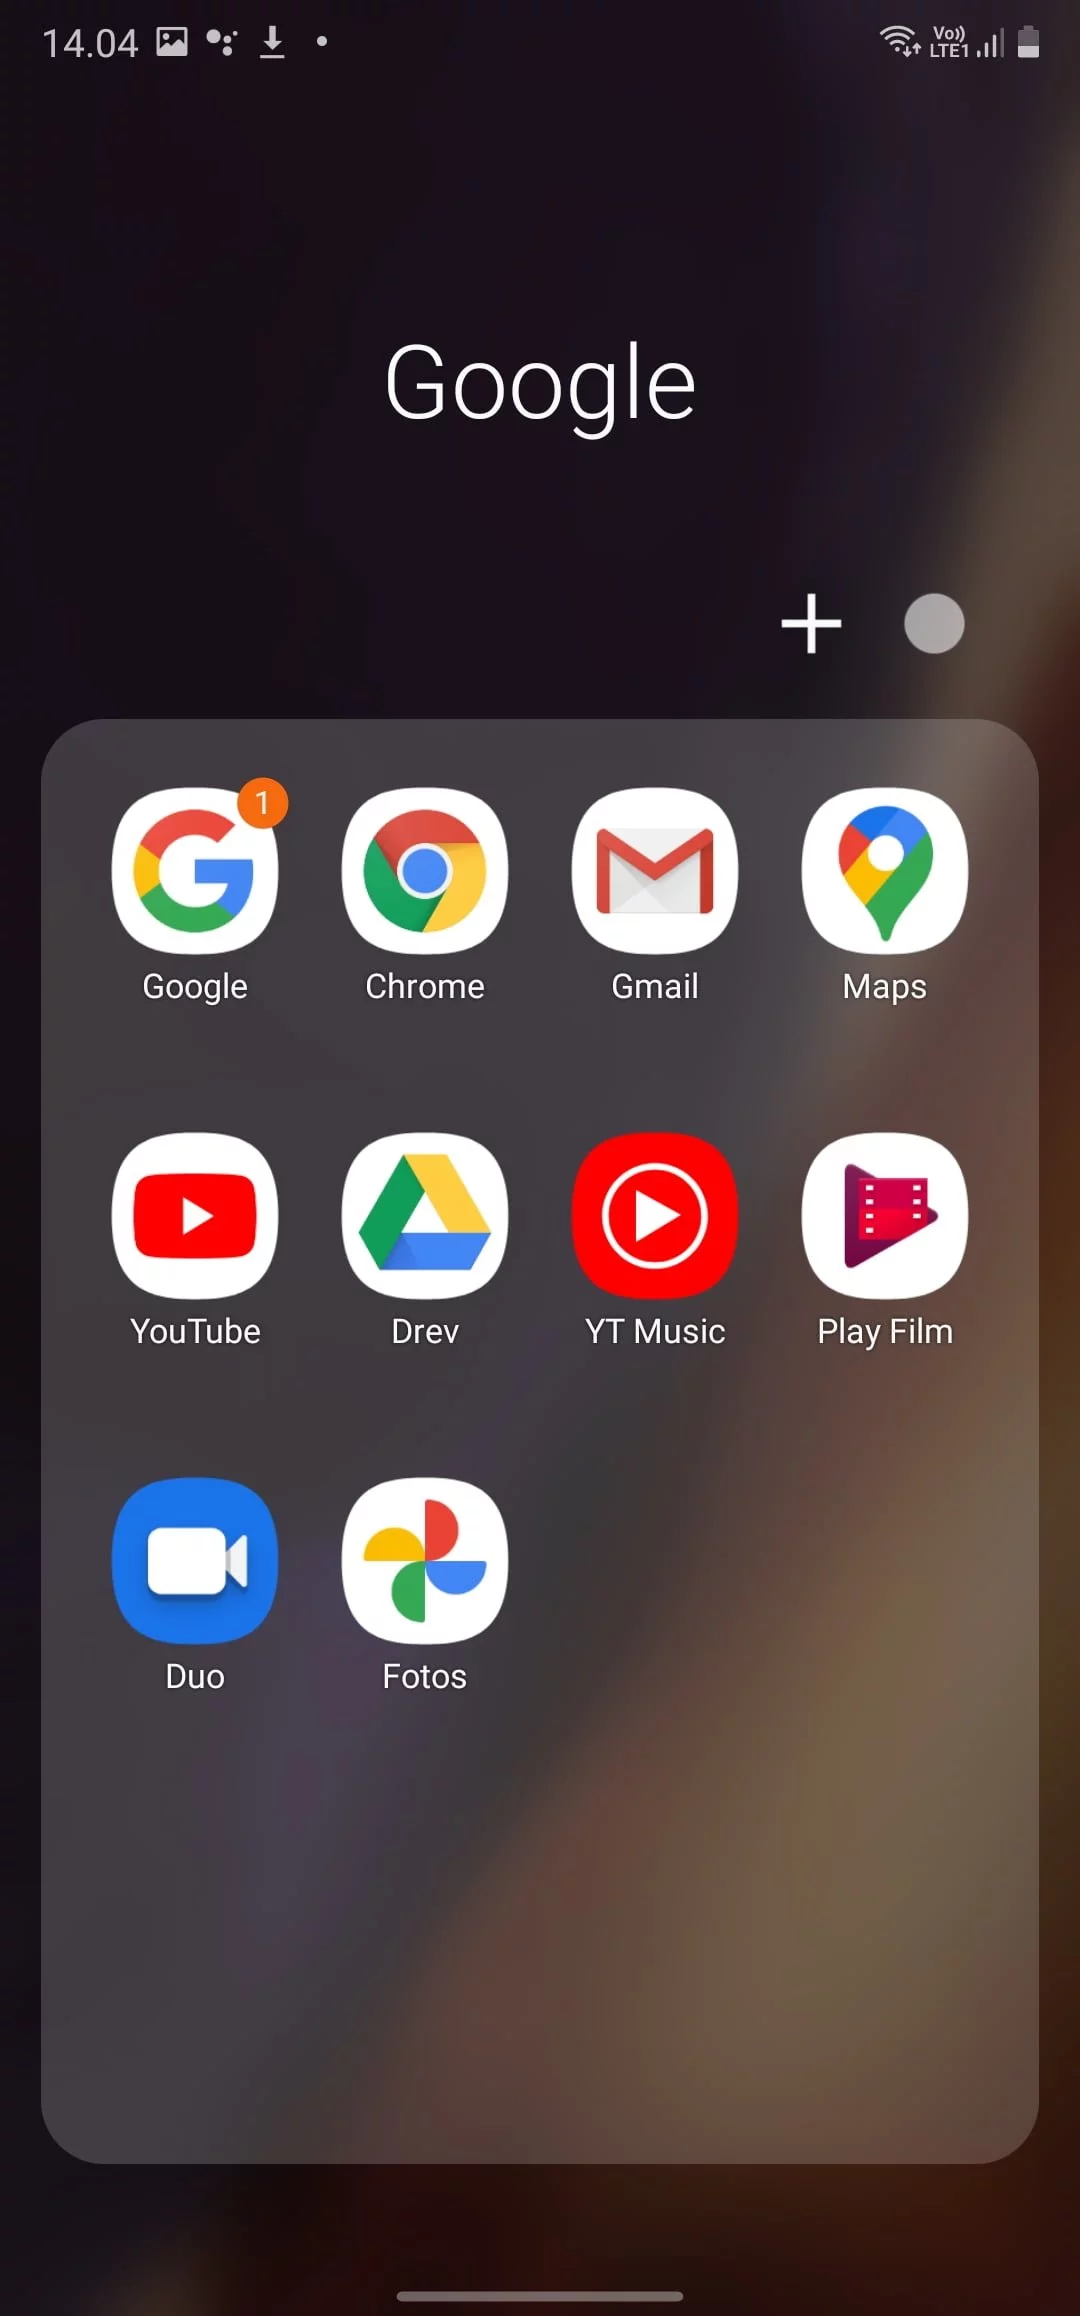 Skærmbillede fra Galaxy Note20 Ultra